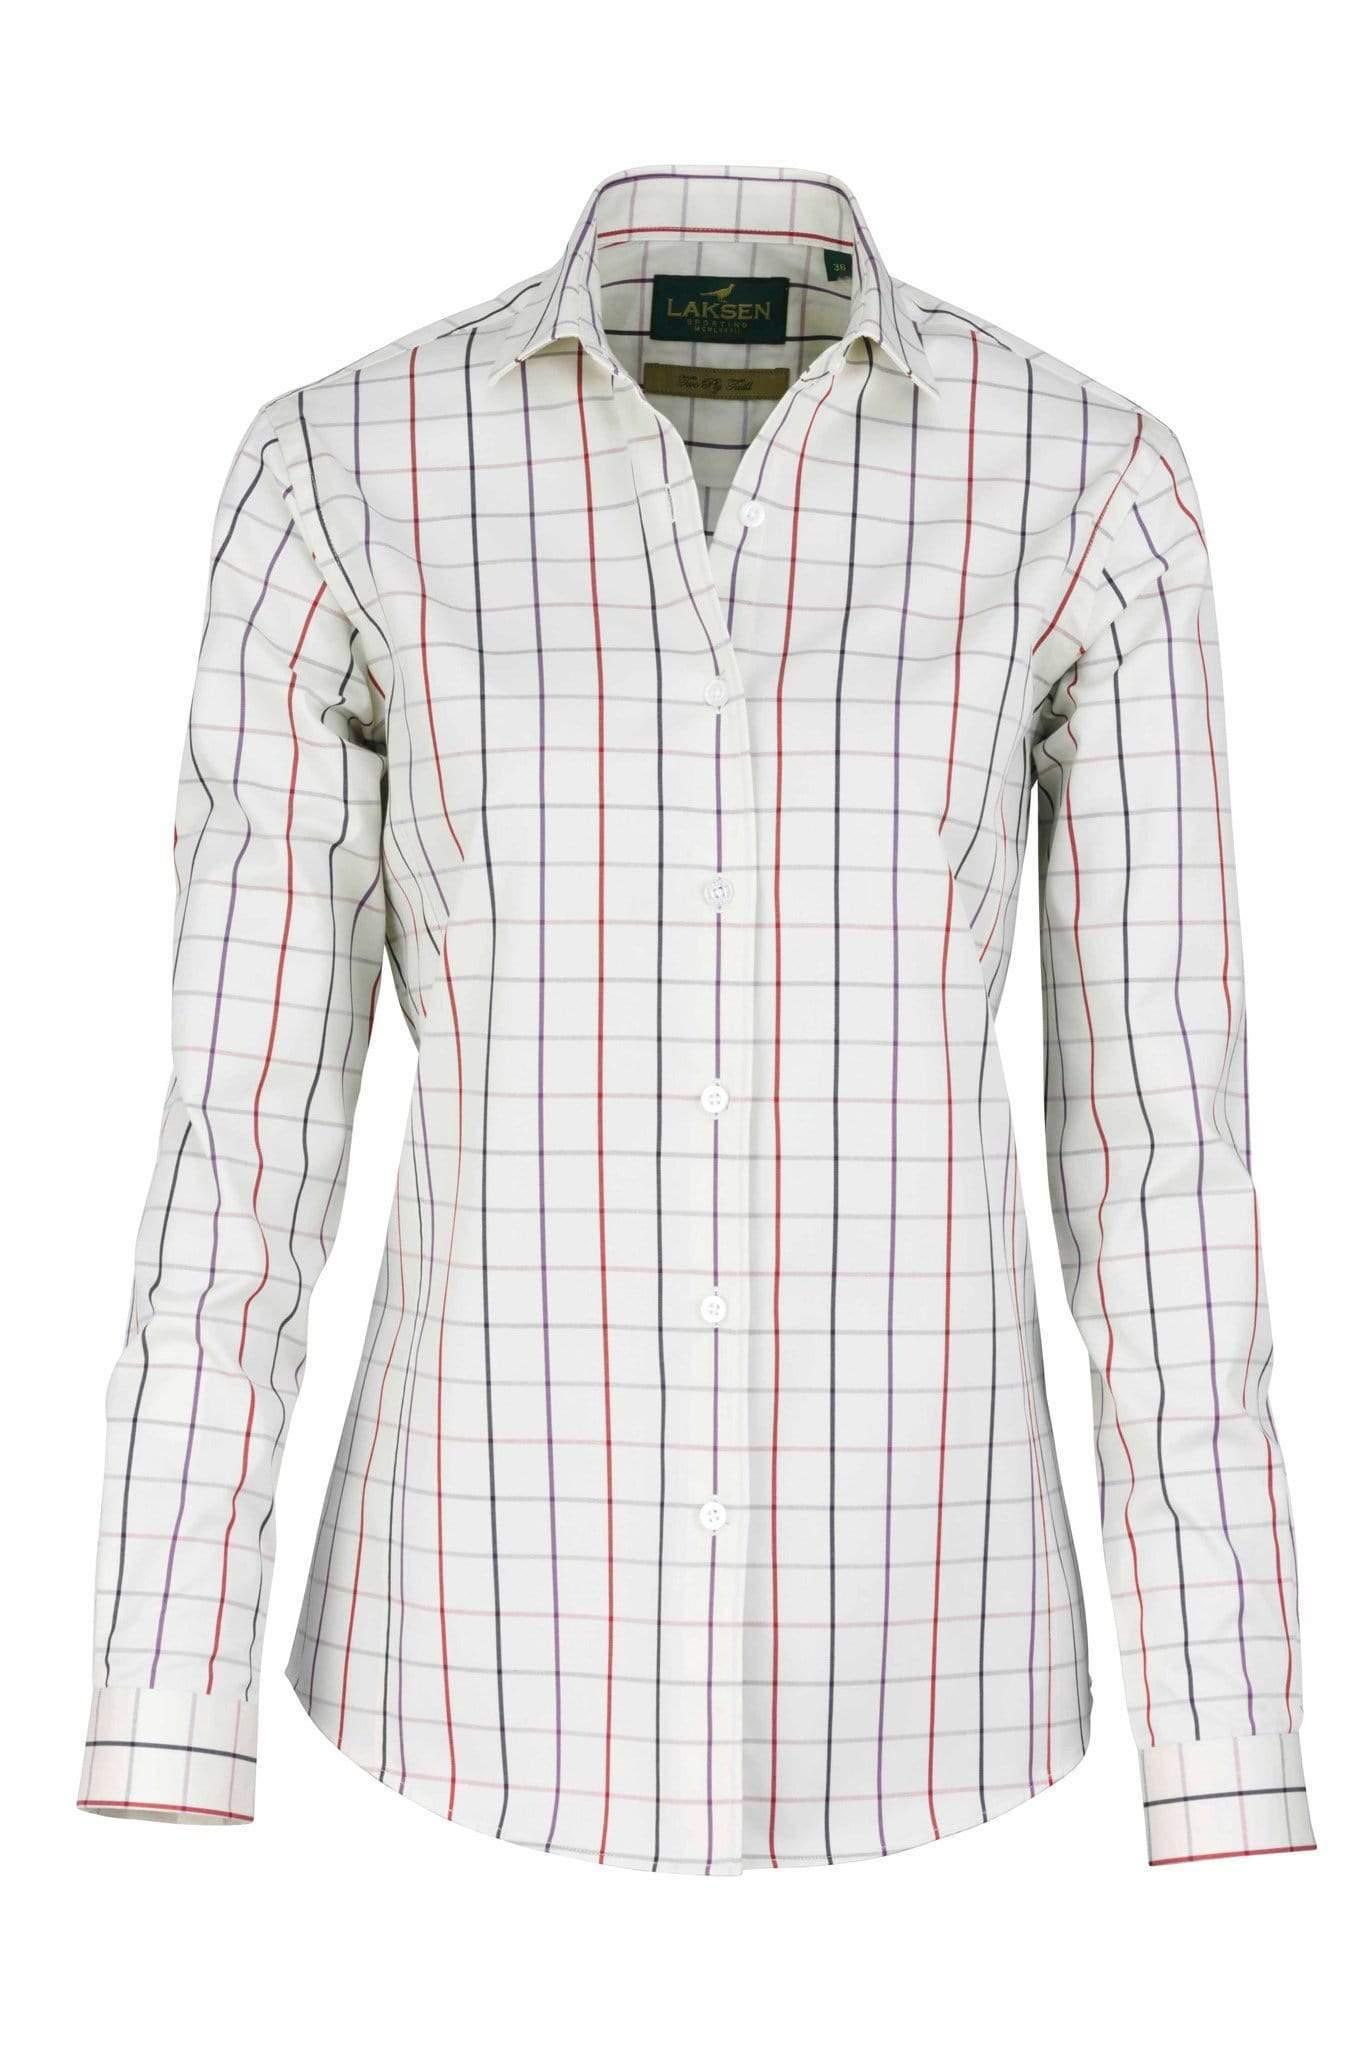 Laksen Shirts Laksen  Dolina 2-Ply Cotton Shirt White with Chili/Purple/Navy